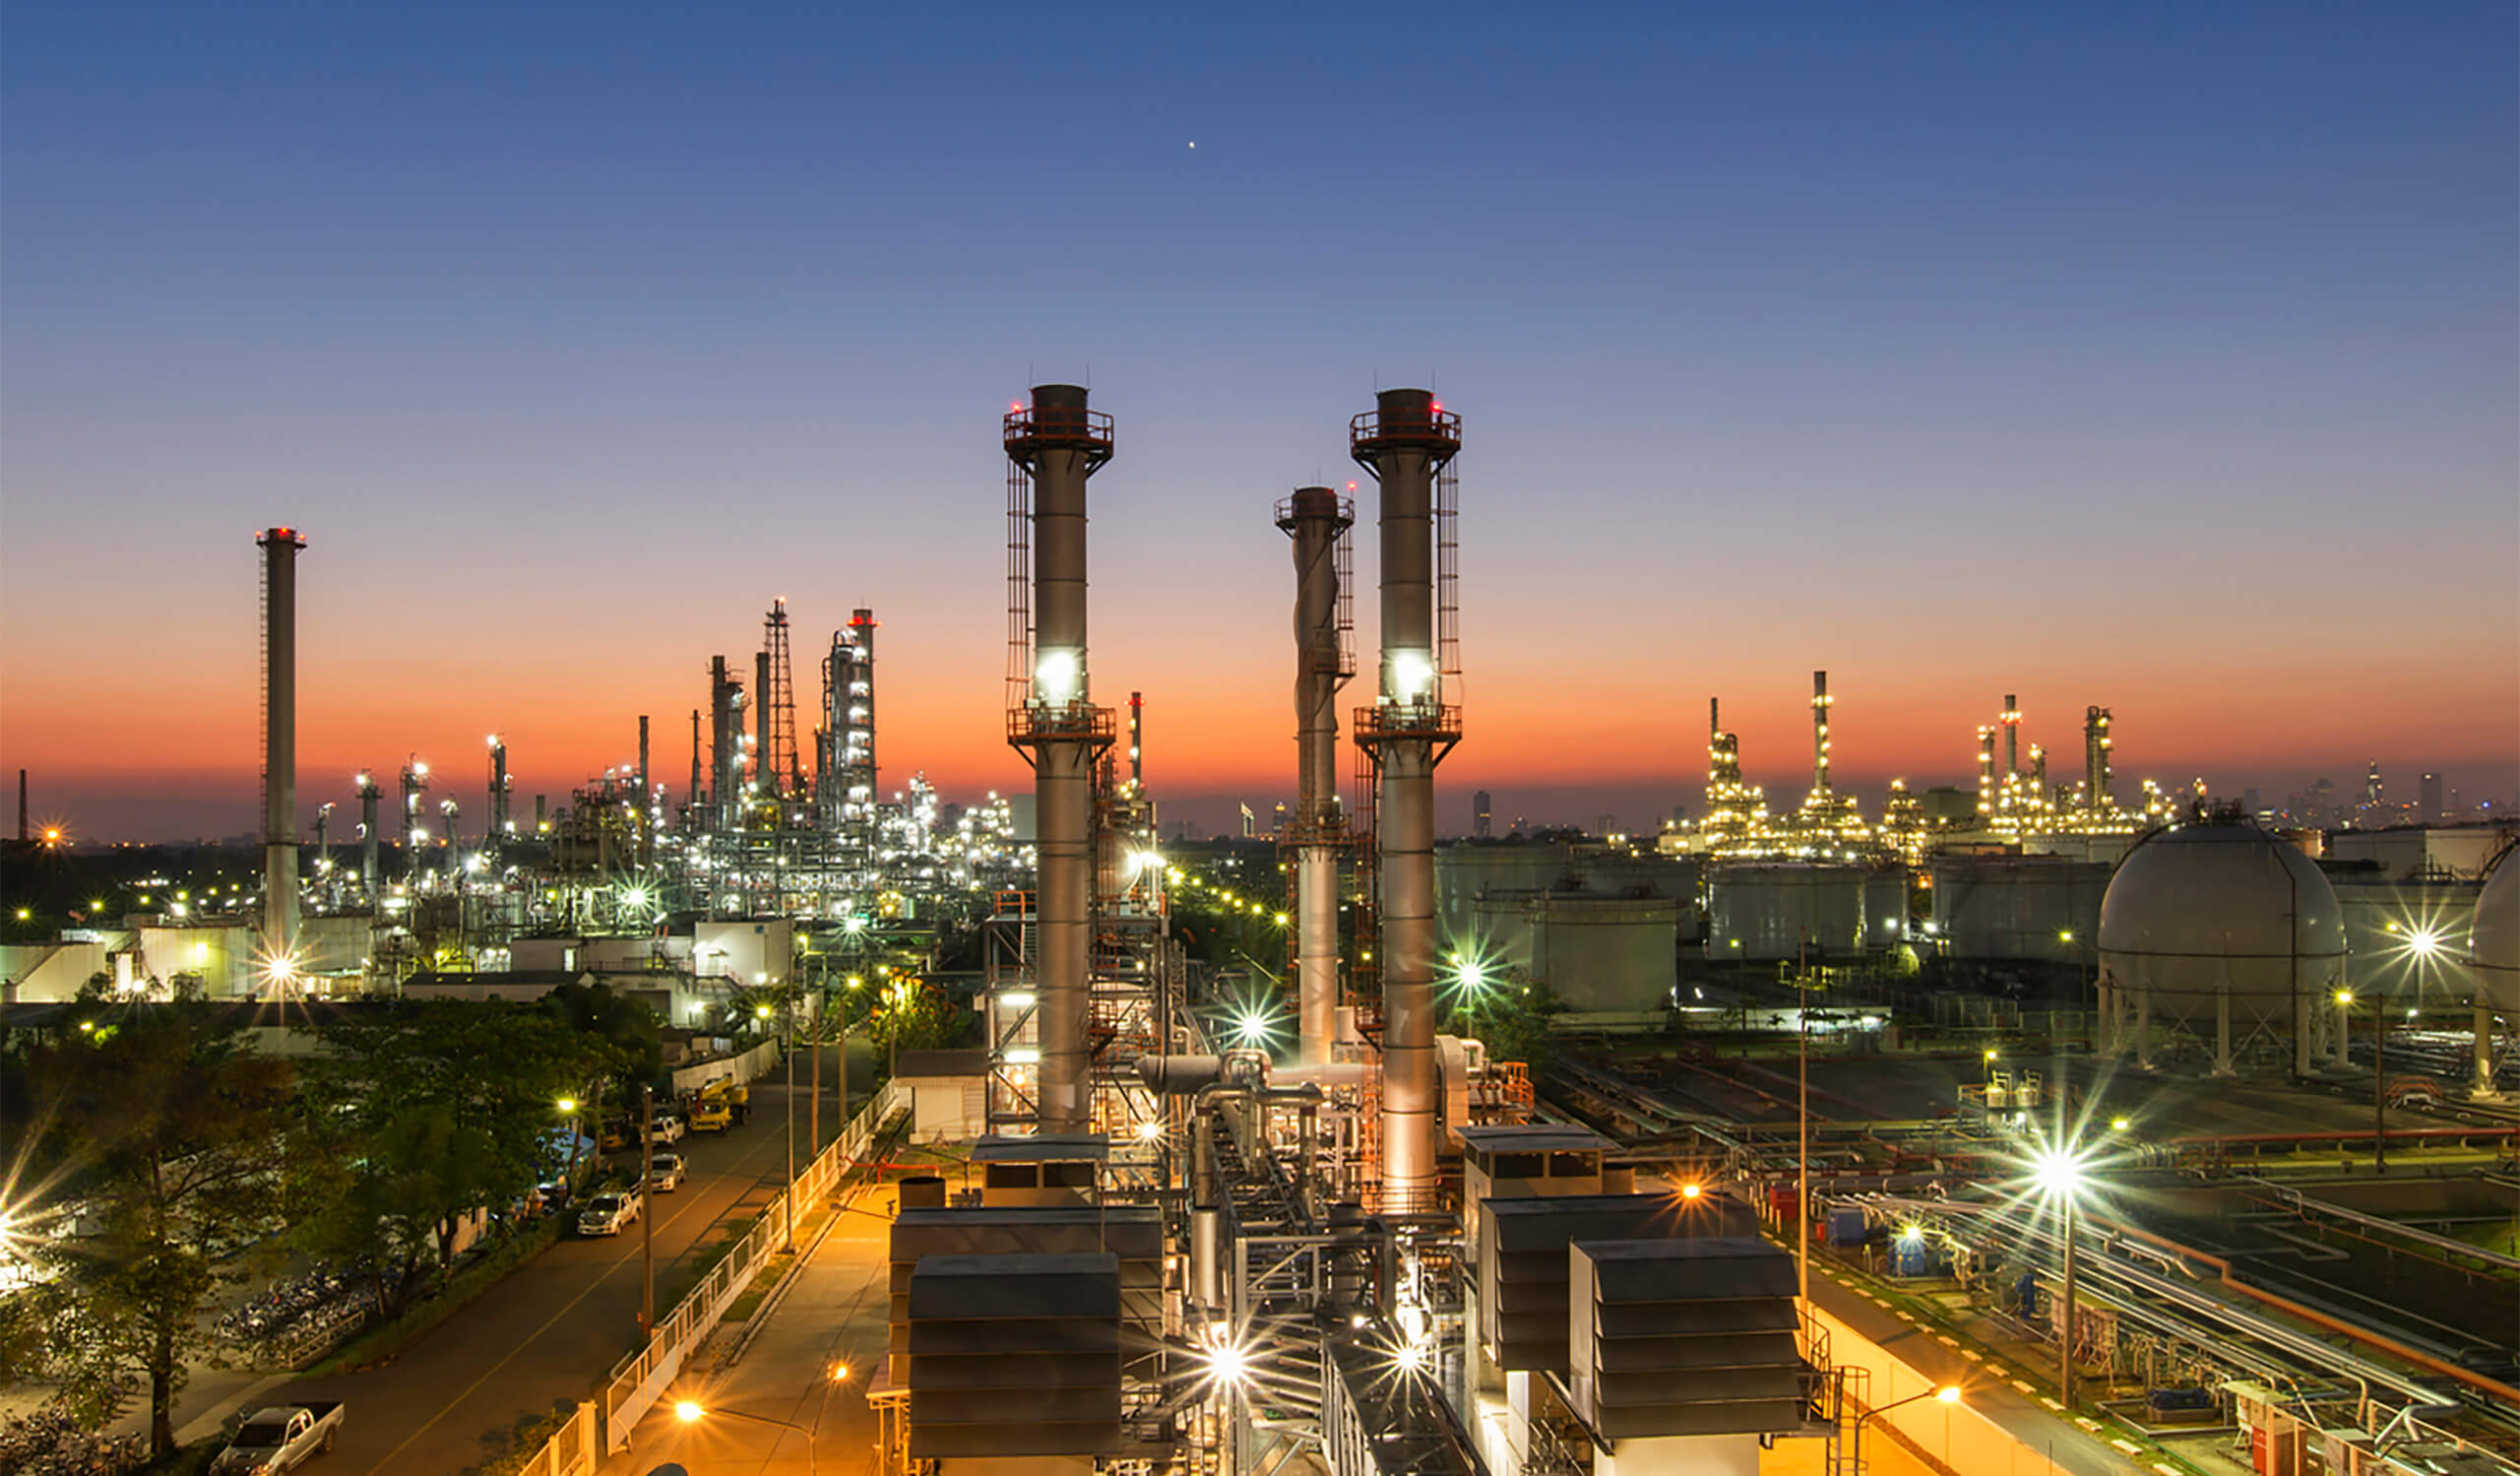 B&W Energy Services Completes De-Bottleneck Project in Gulf Coast Region